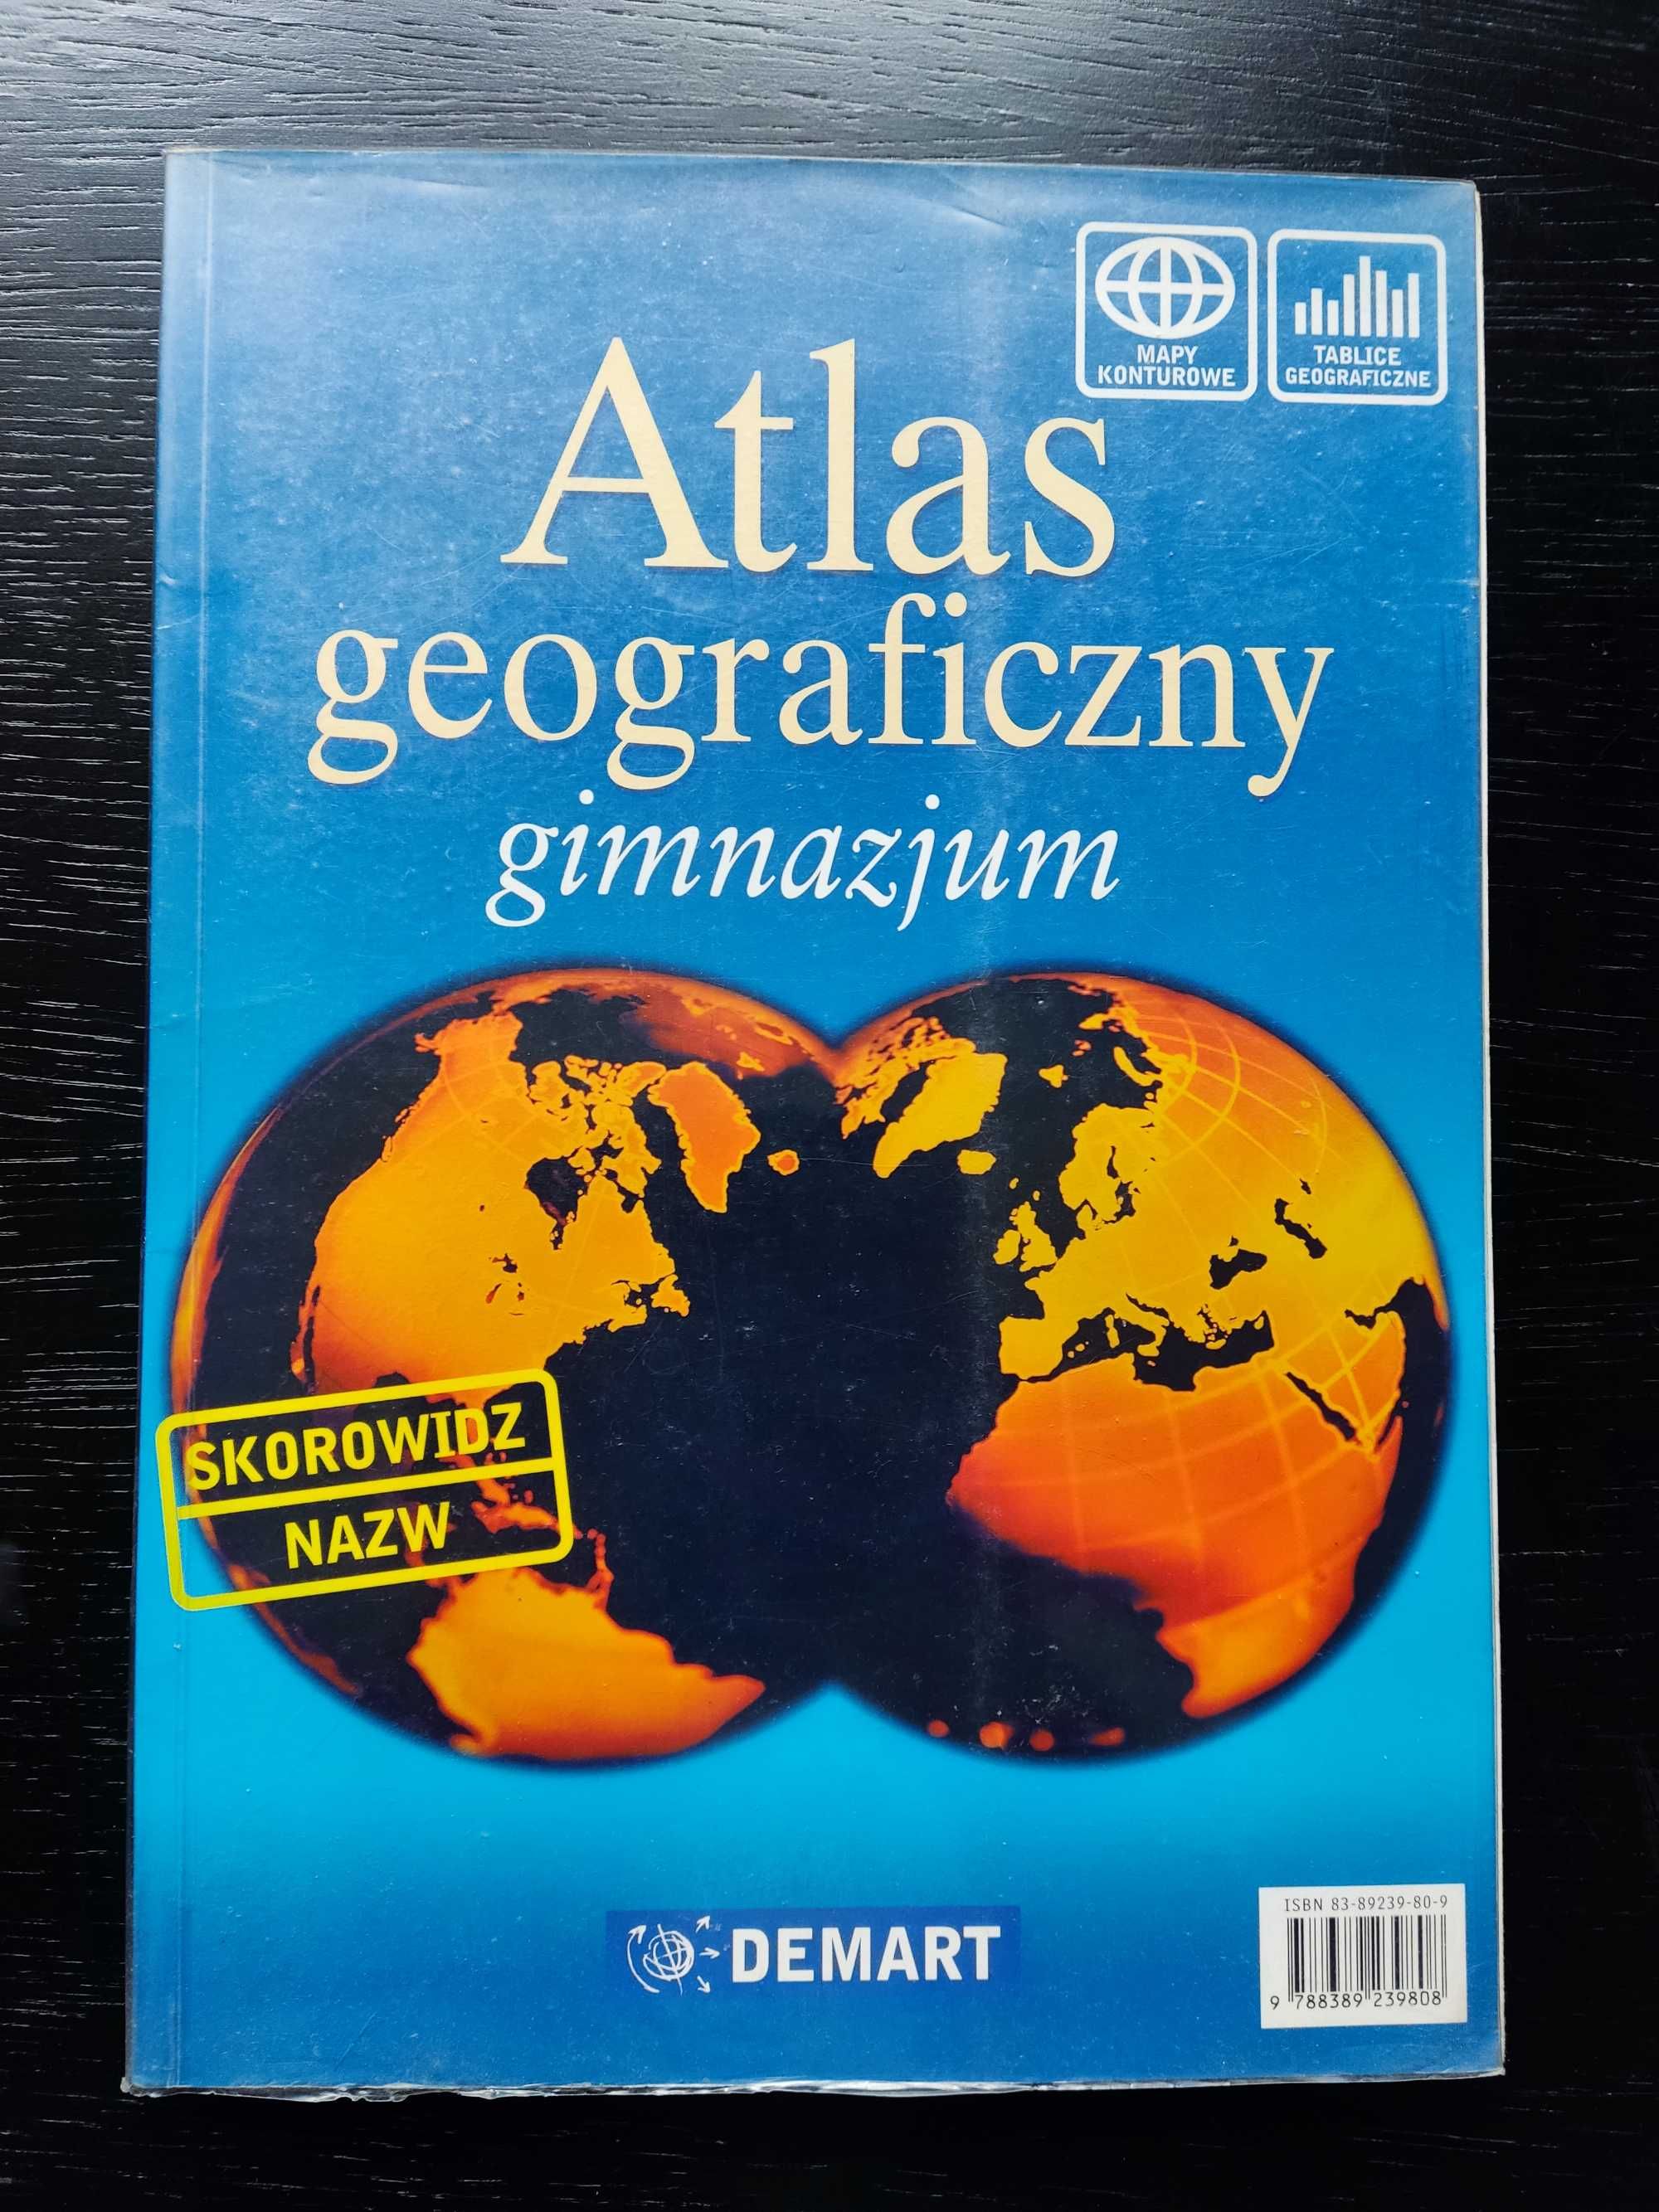 Atlas geograficzny - gimnazjum